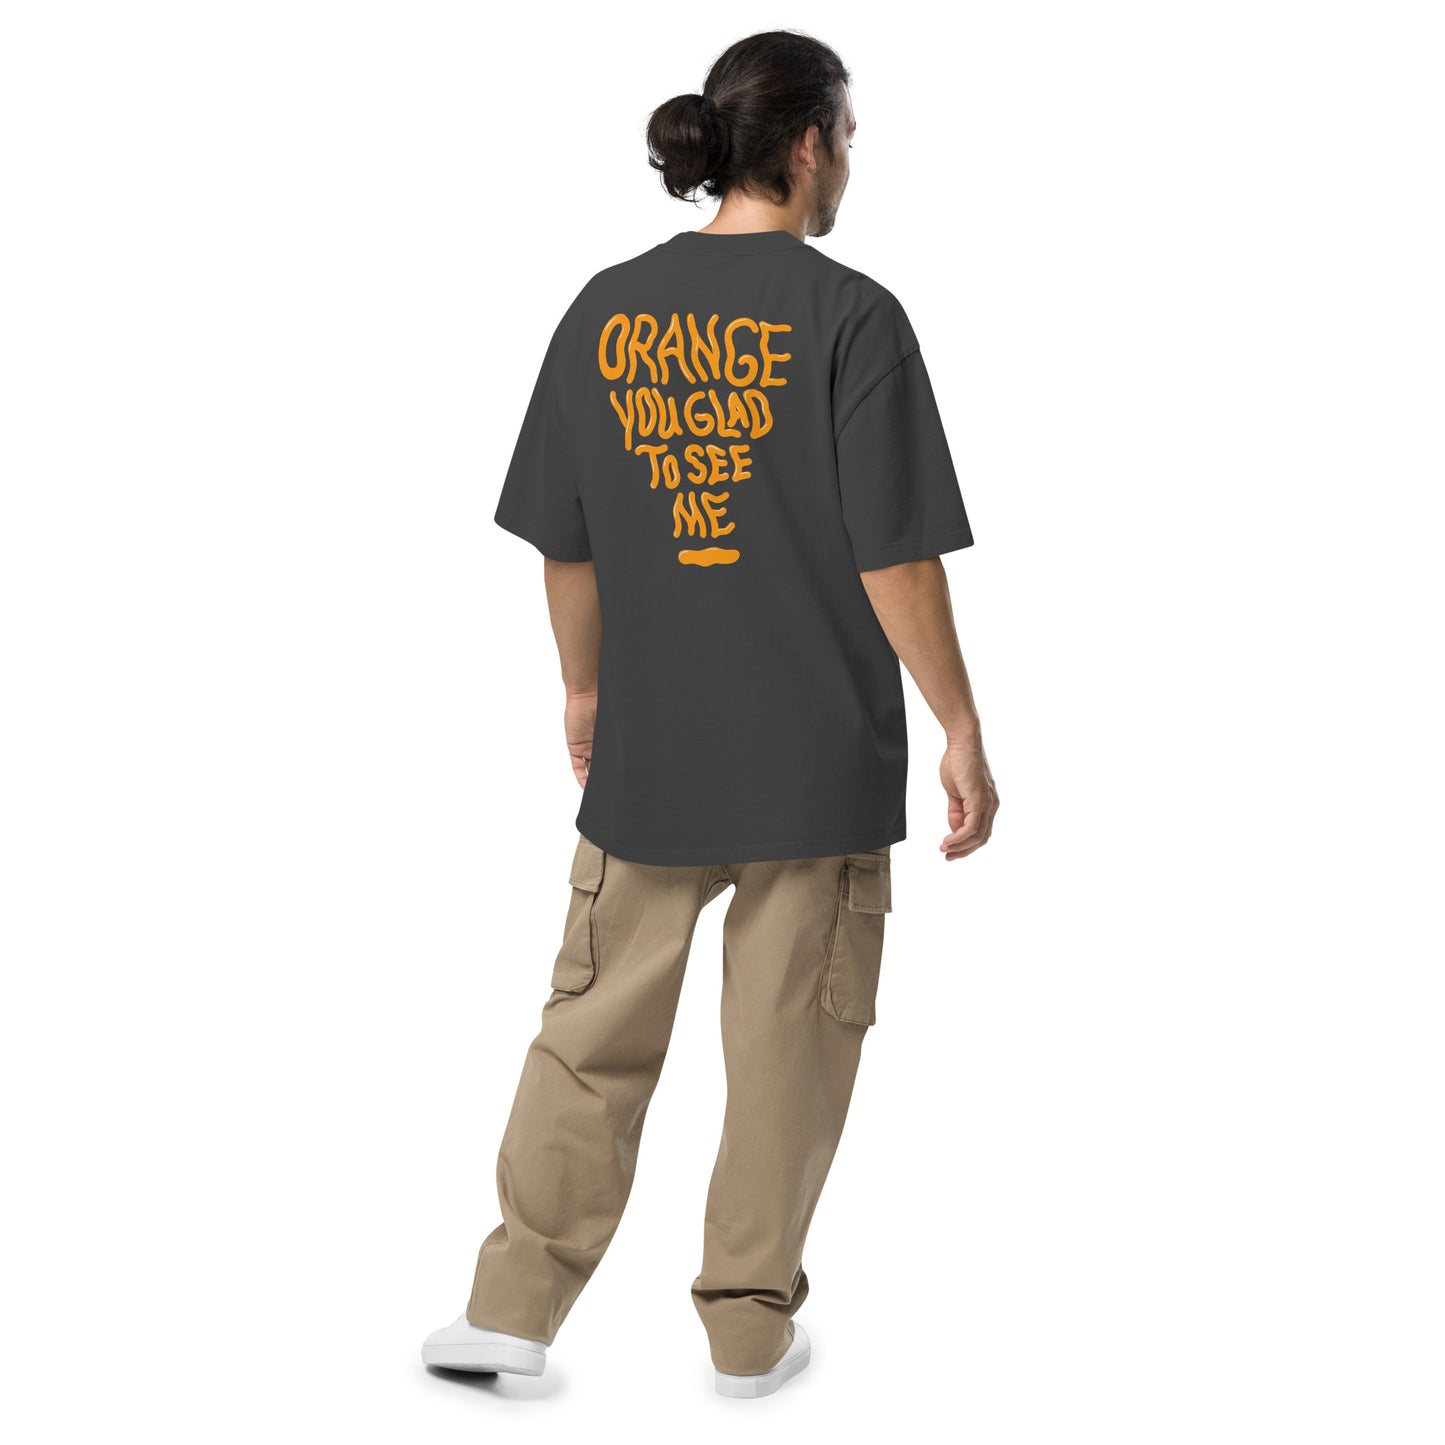 Orange Oversized faded t-shirt - Coleition